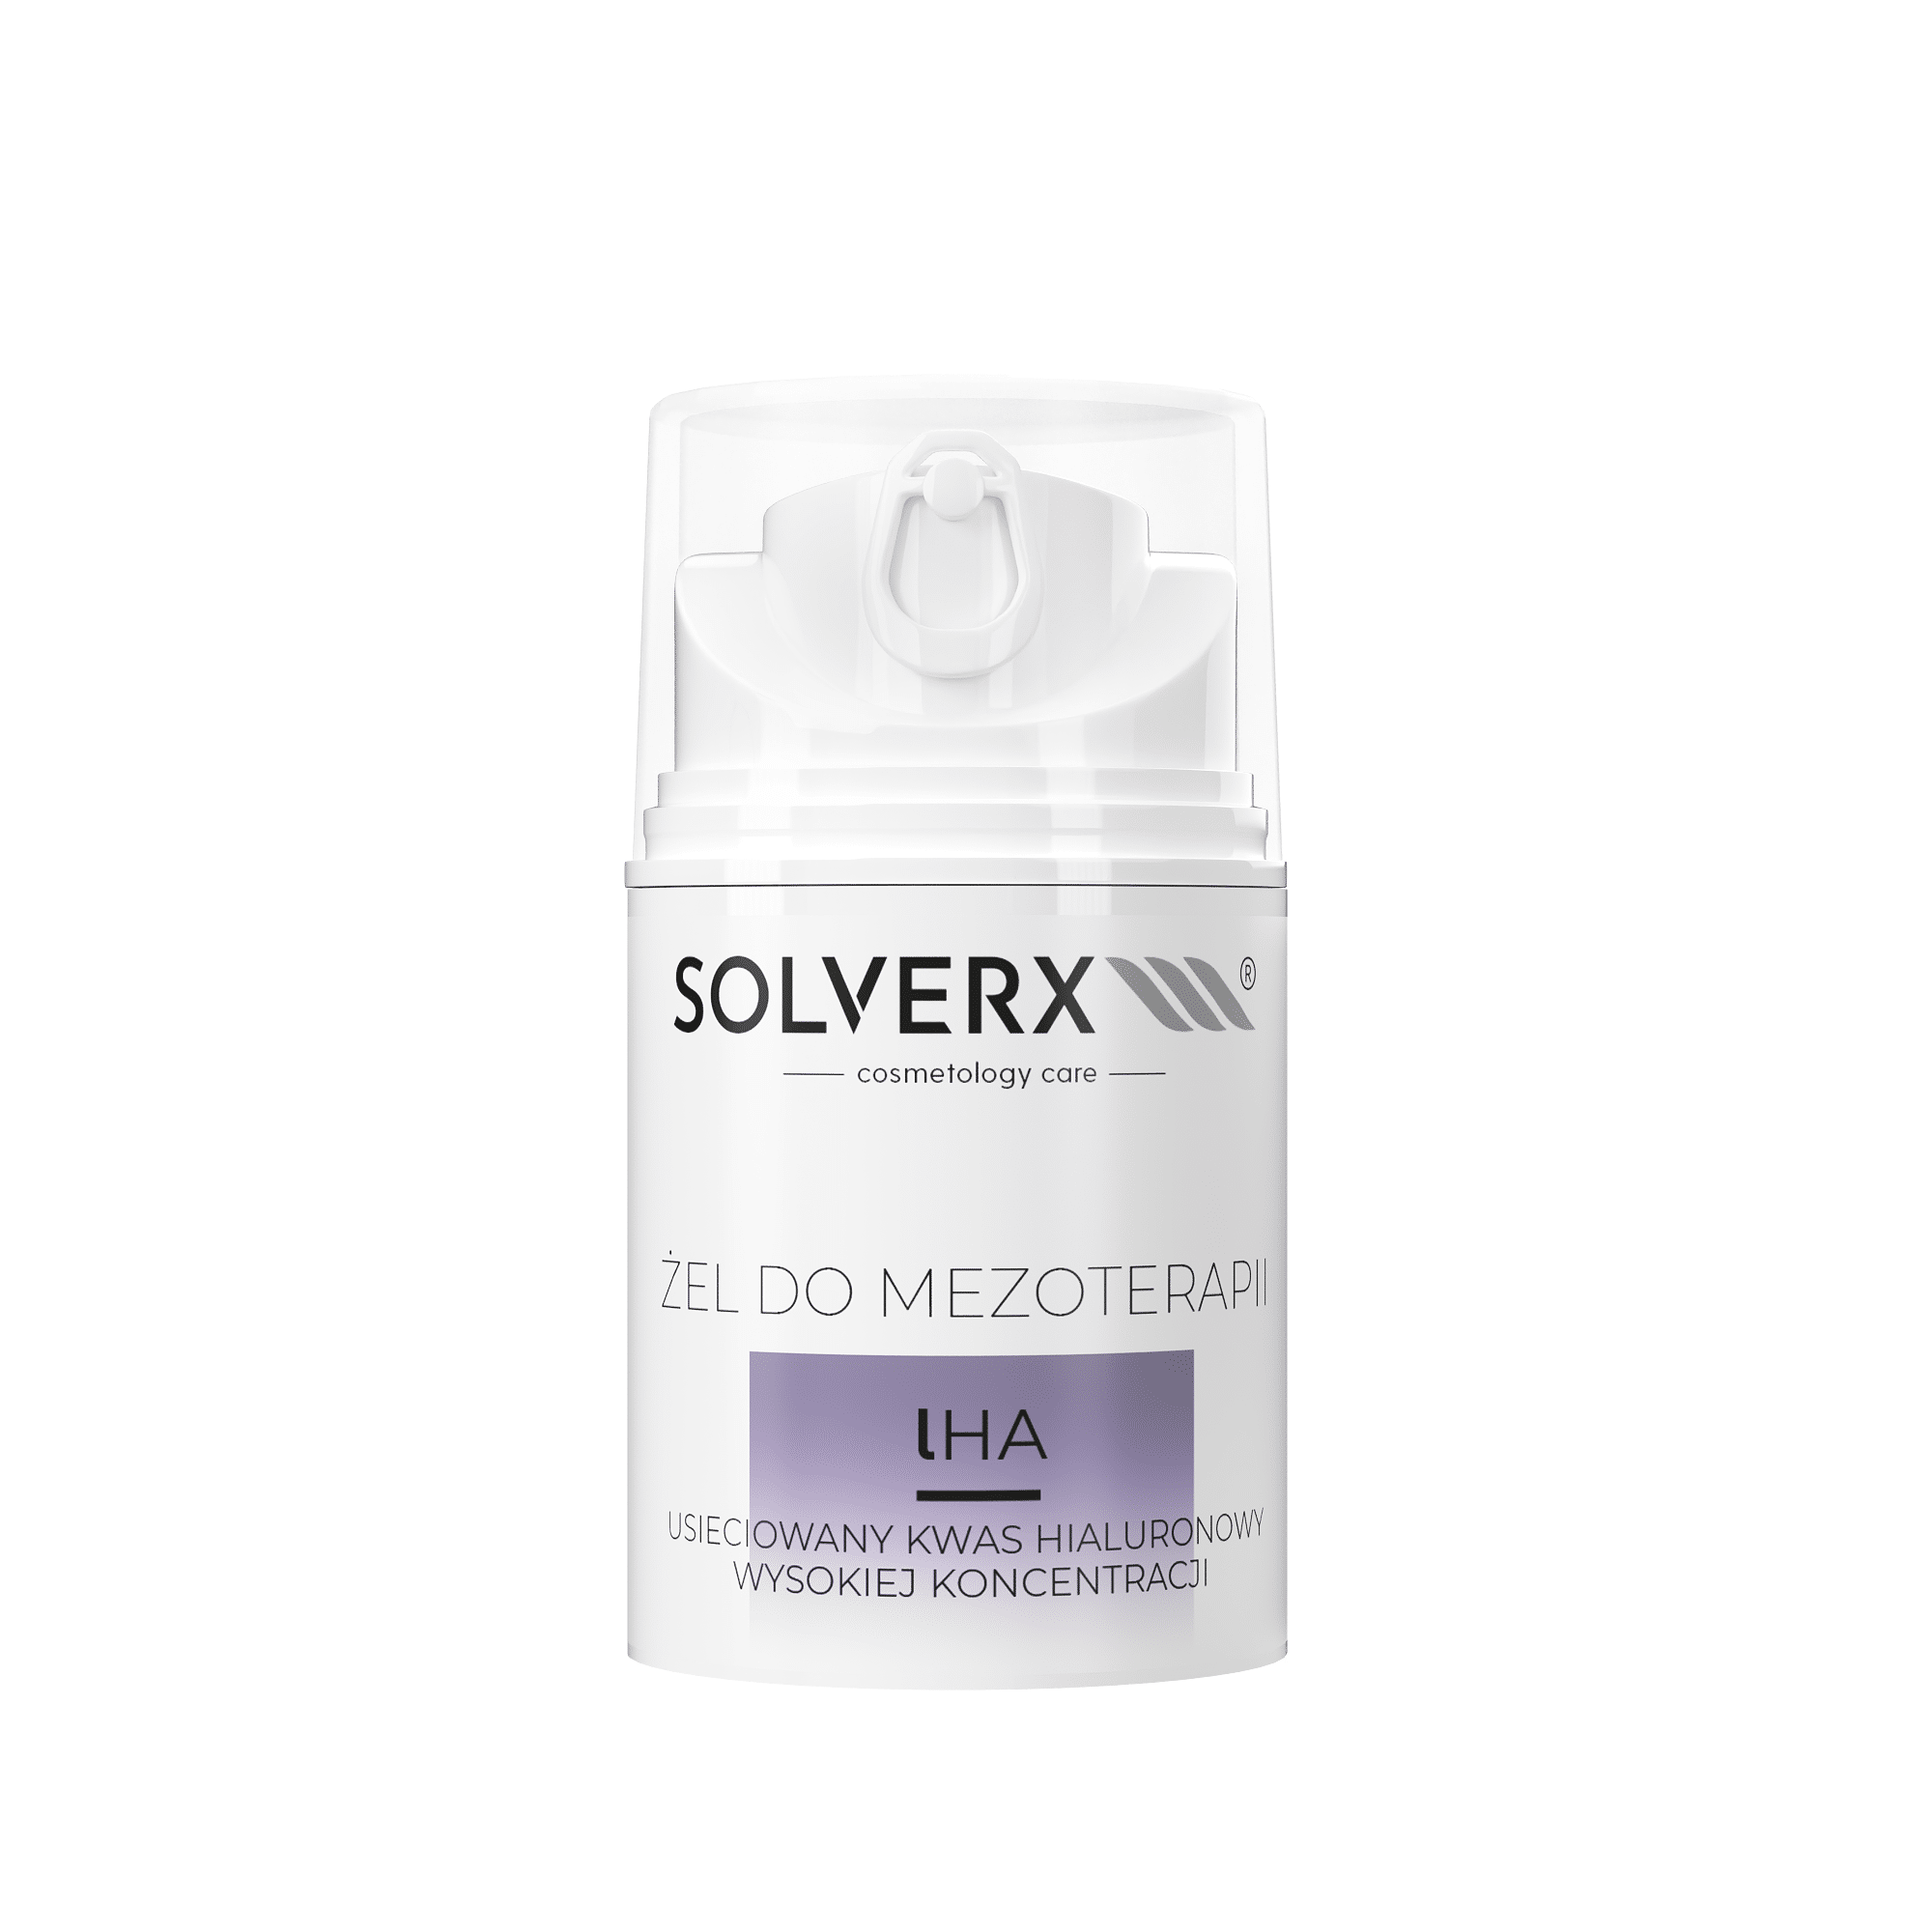 SOLVERX Cosmetology Care lHA Żel do mezoterapii mikroigłowej i bezigłowej